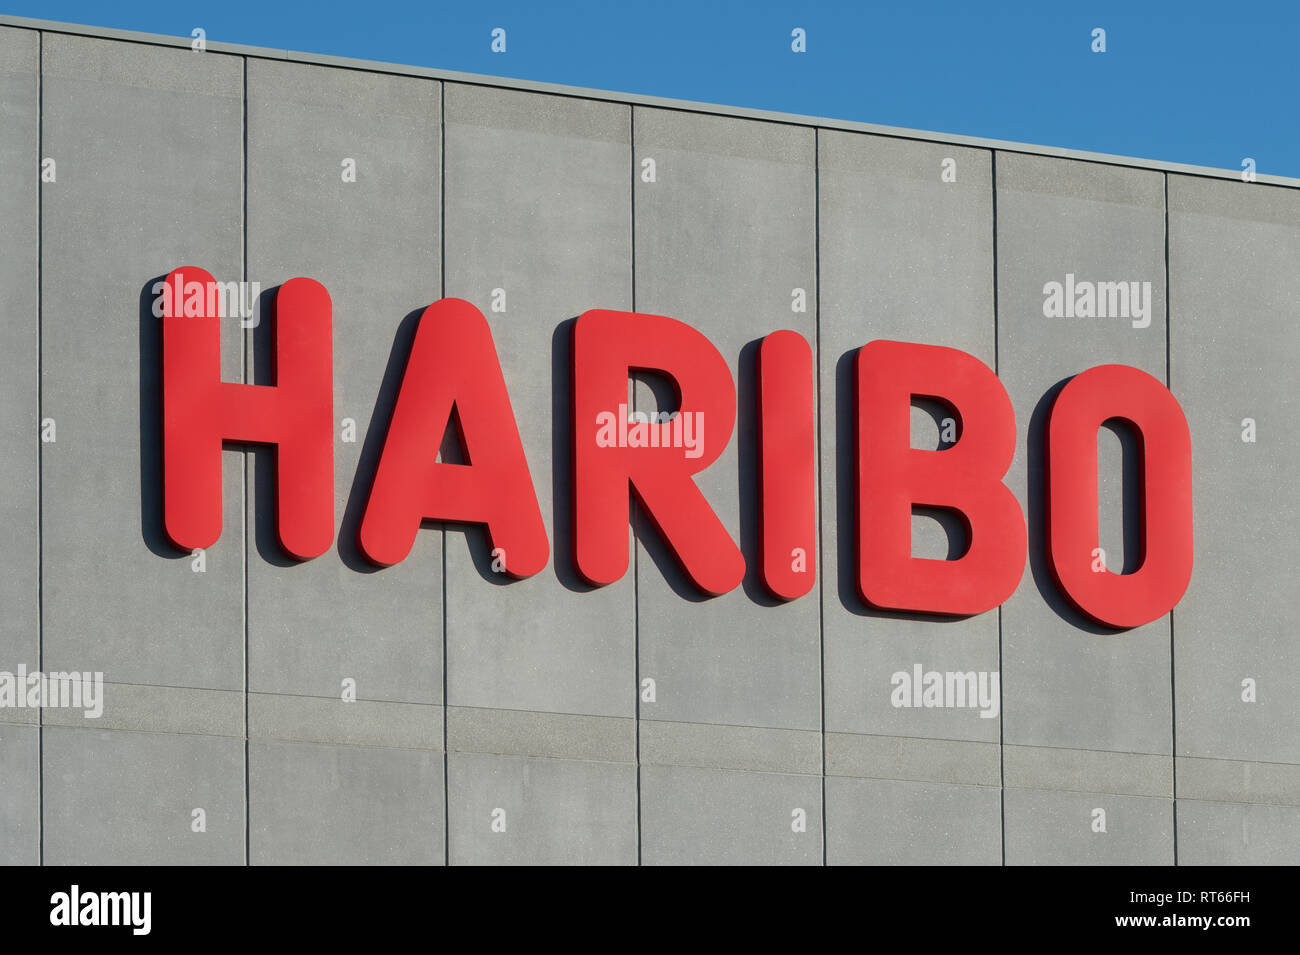 Haribo logo immagini e fotografie stock ad alta risoluzione - Alamy